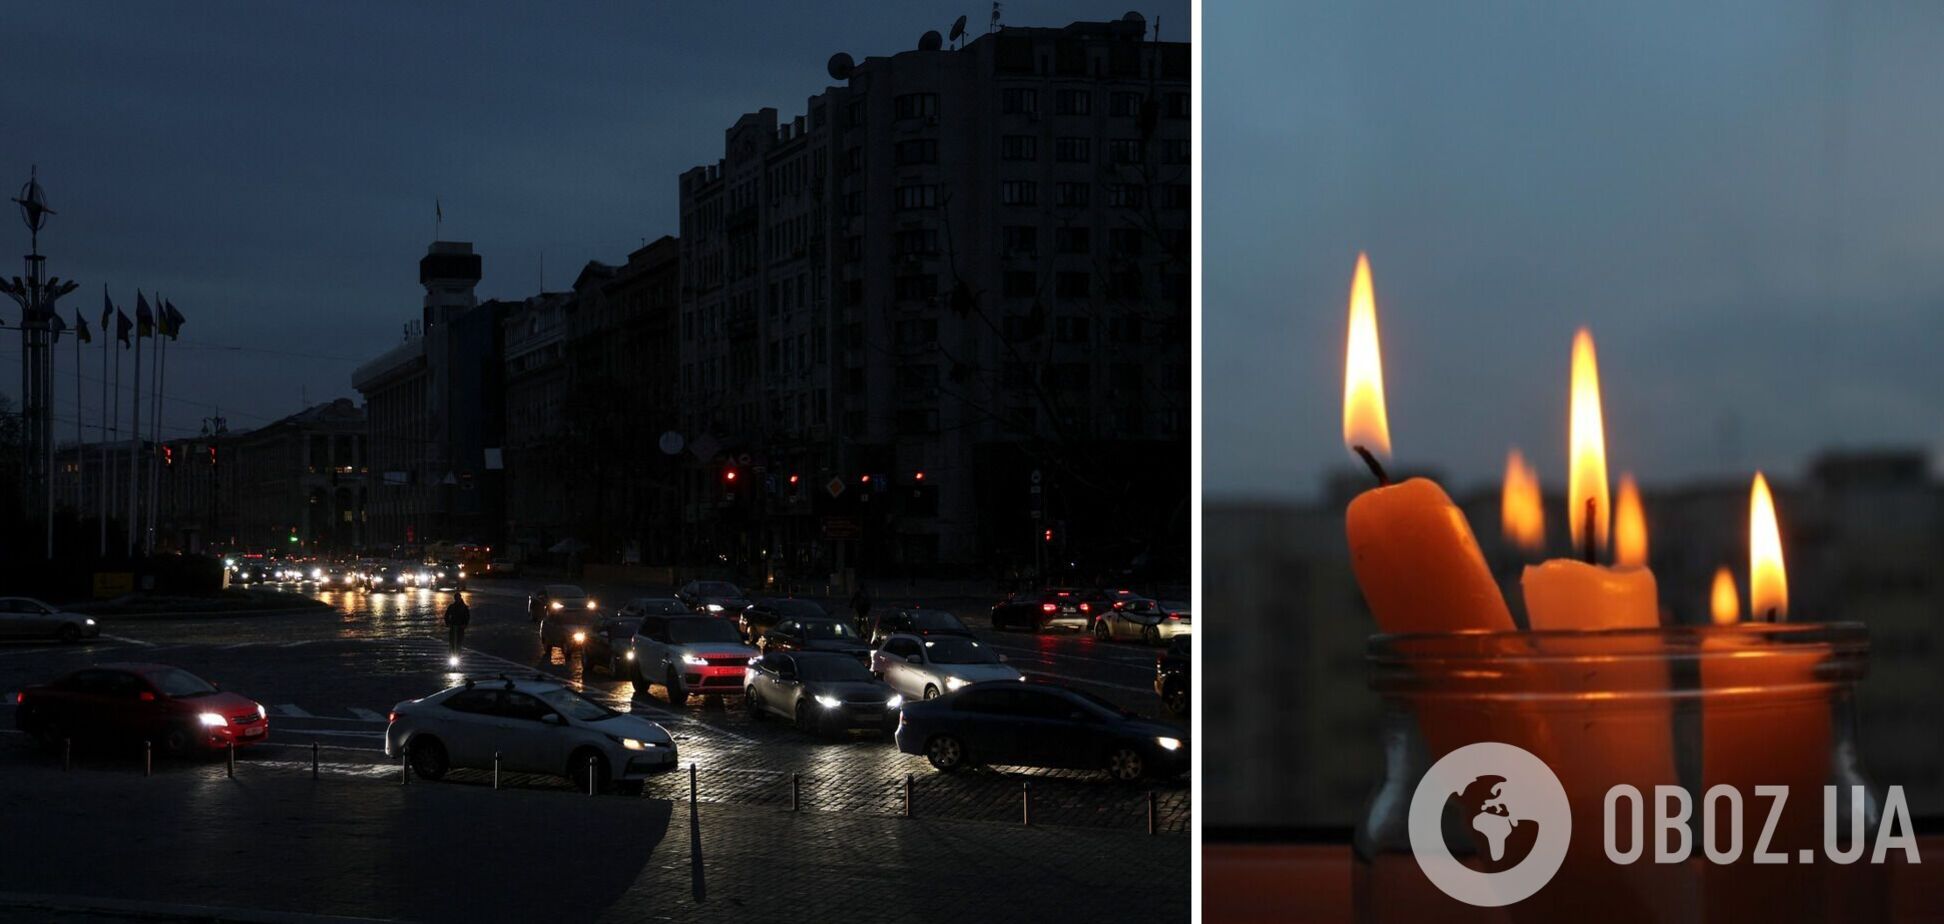 В Киеве света может не быть по 10 часов: в YASNO рассказали о ситуации с электричеством в столице и дали неутешительный прогноз